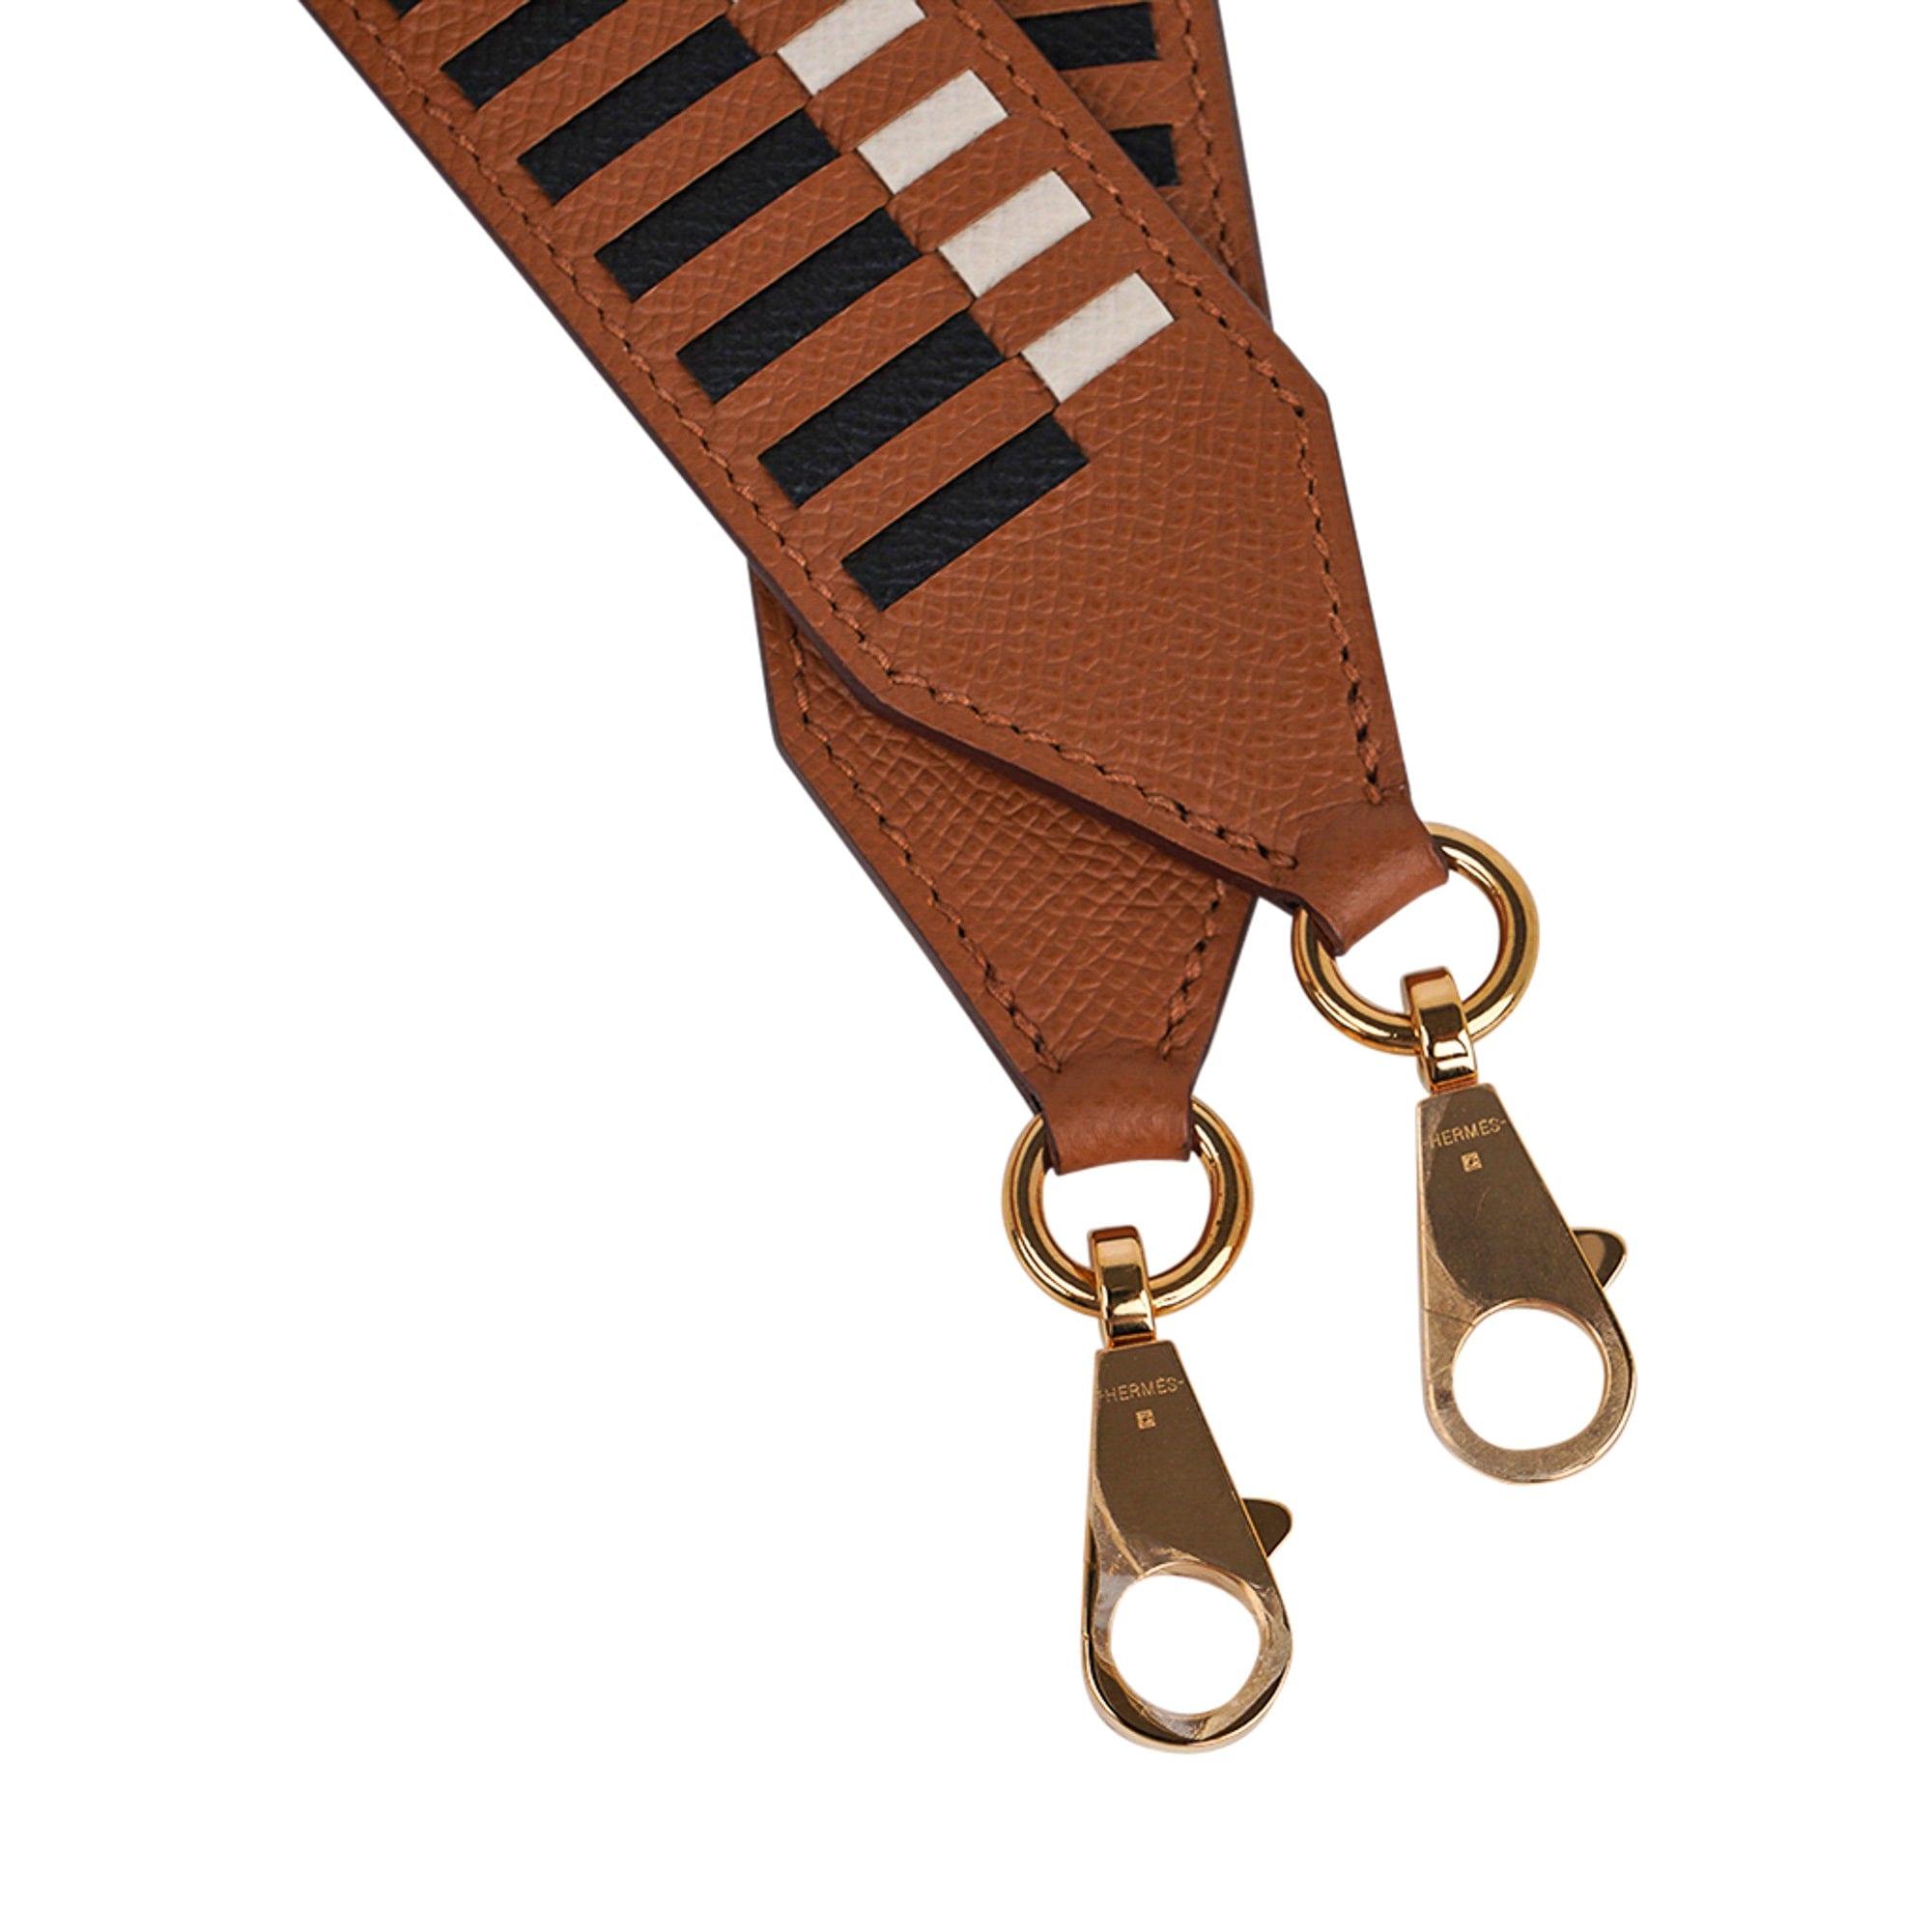 hermes leather bag strap